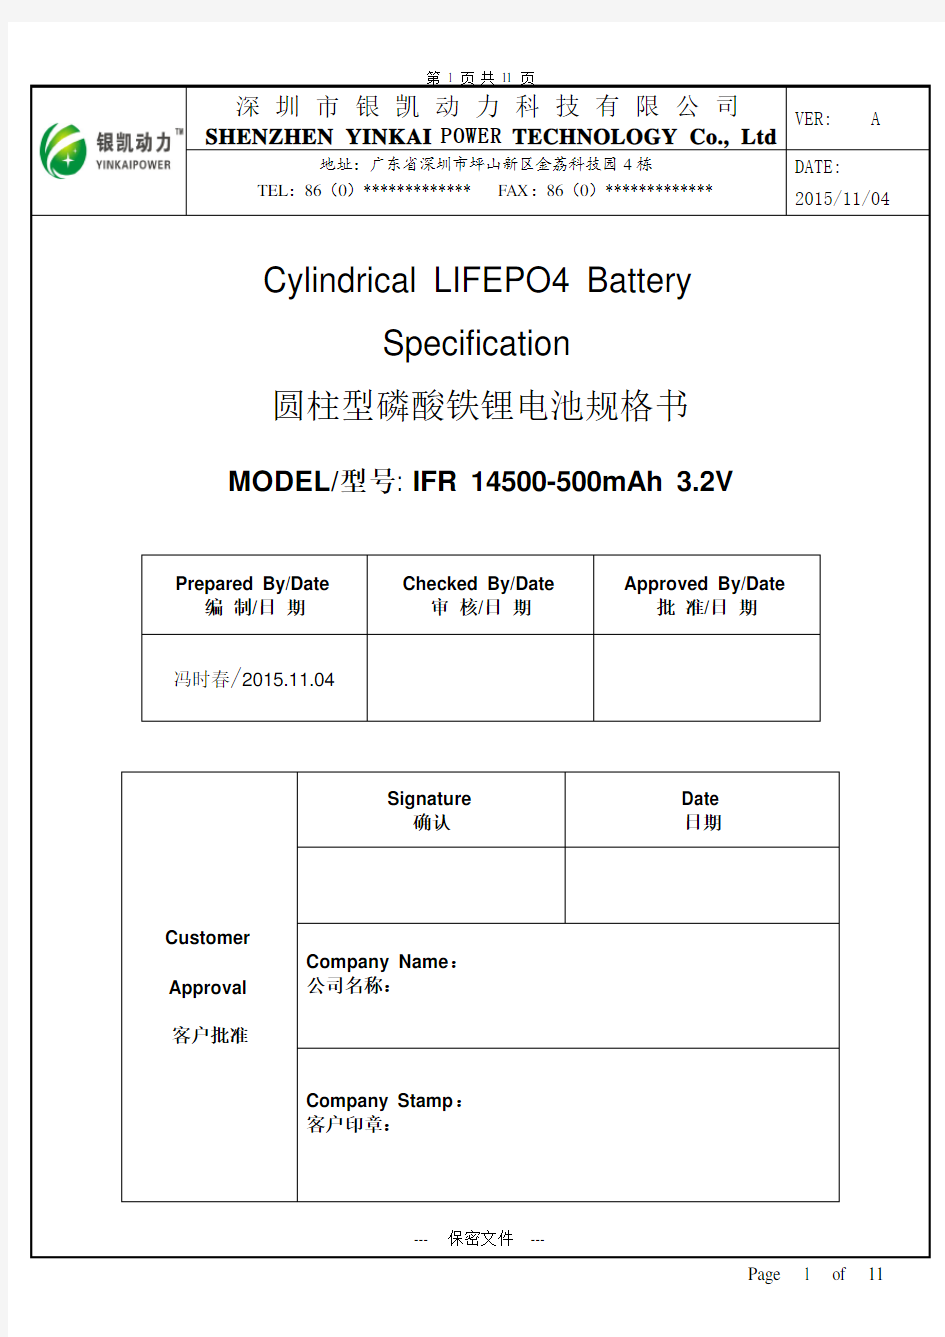 IFR 14500-500mAh 3.2V磷酸铁锂电池规格书超详细版